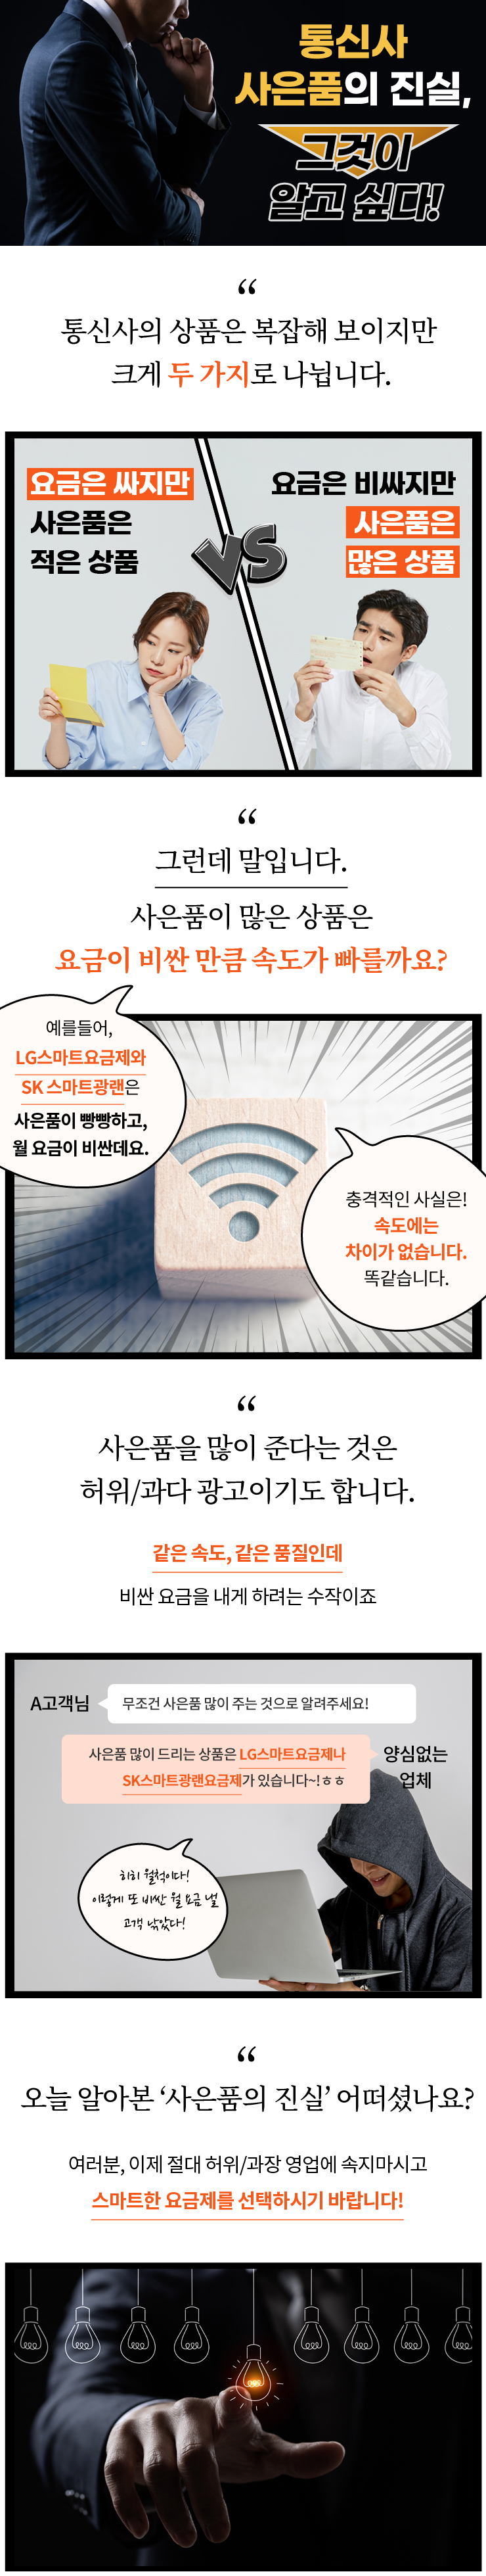 통신사 사은품의 진실~!!